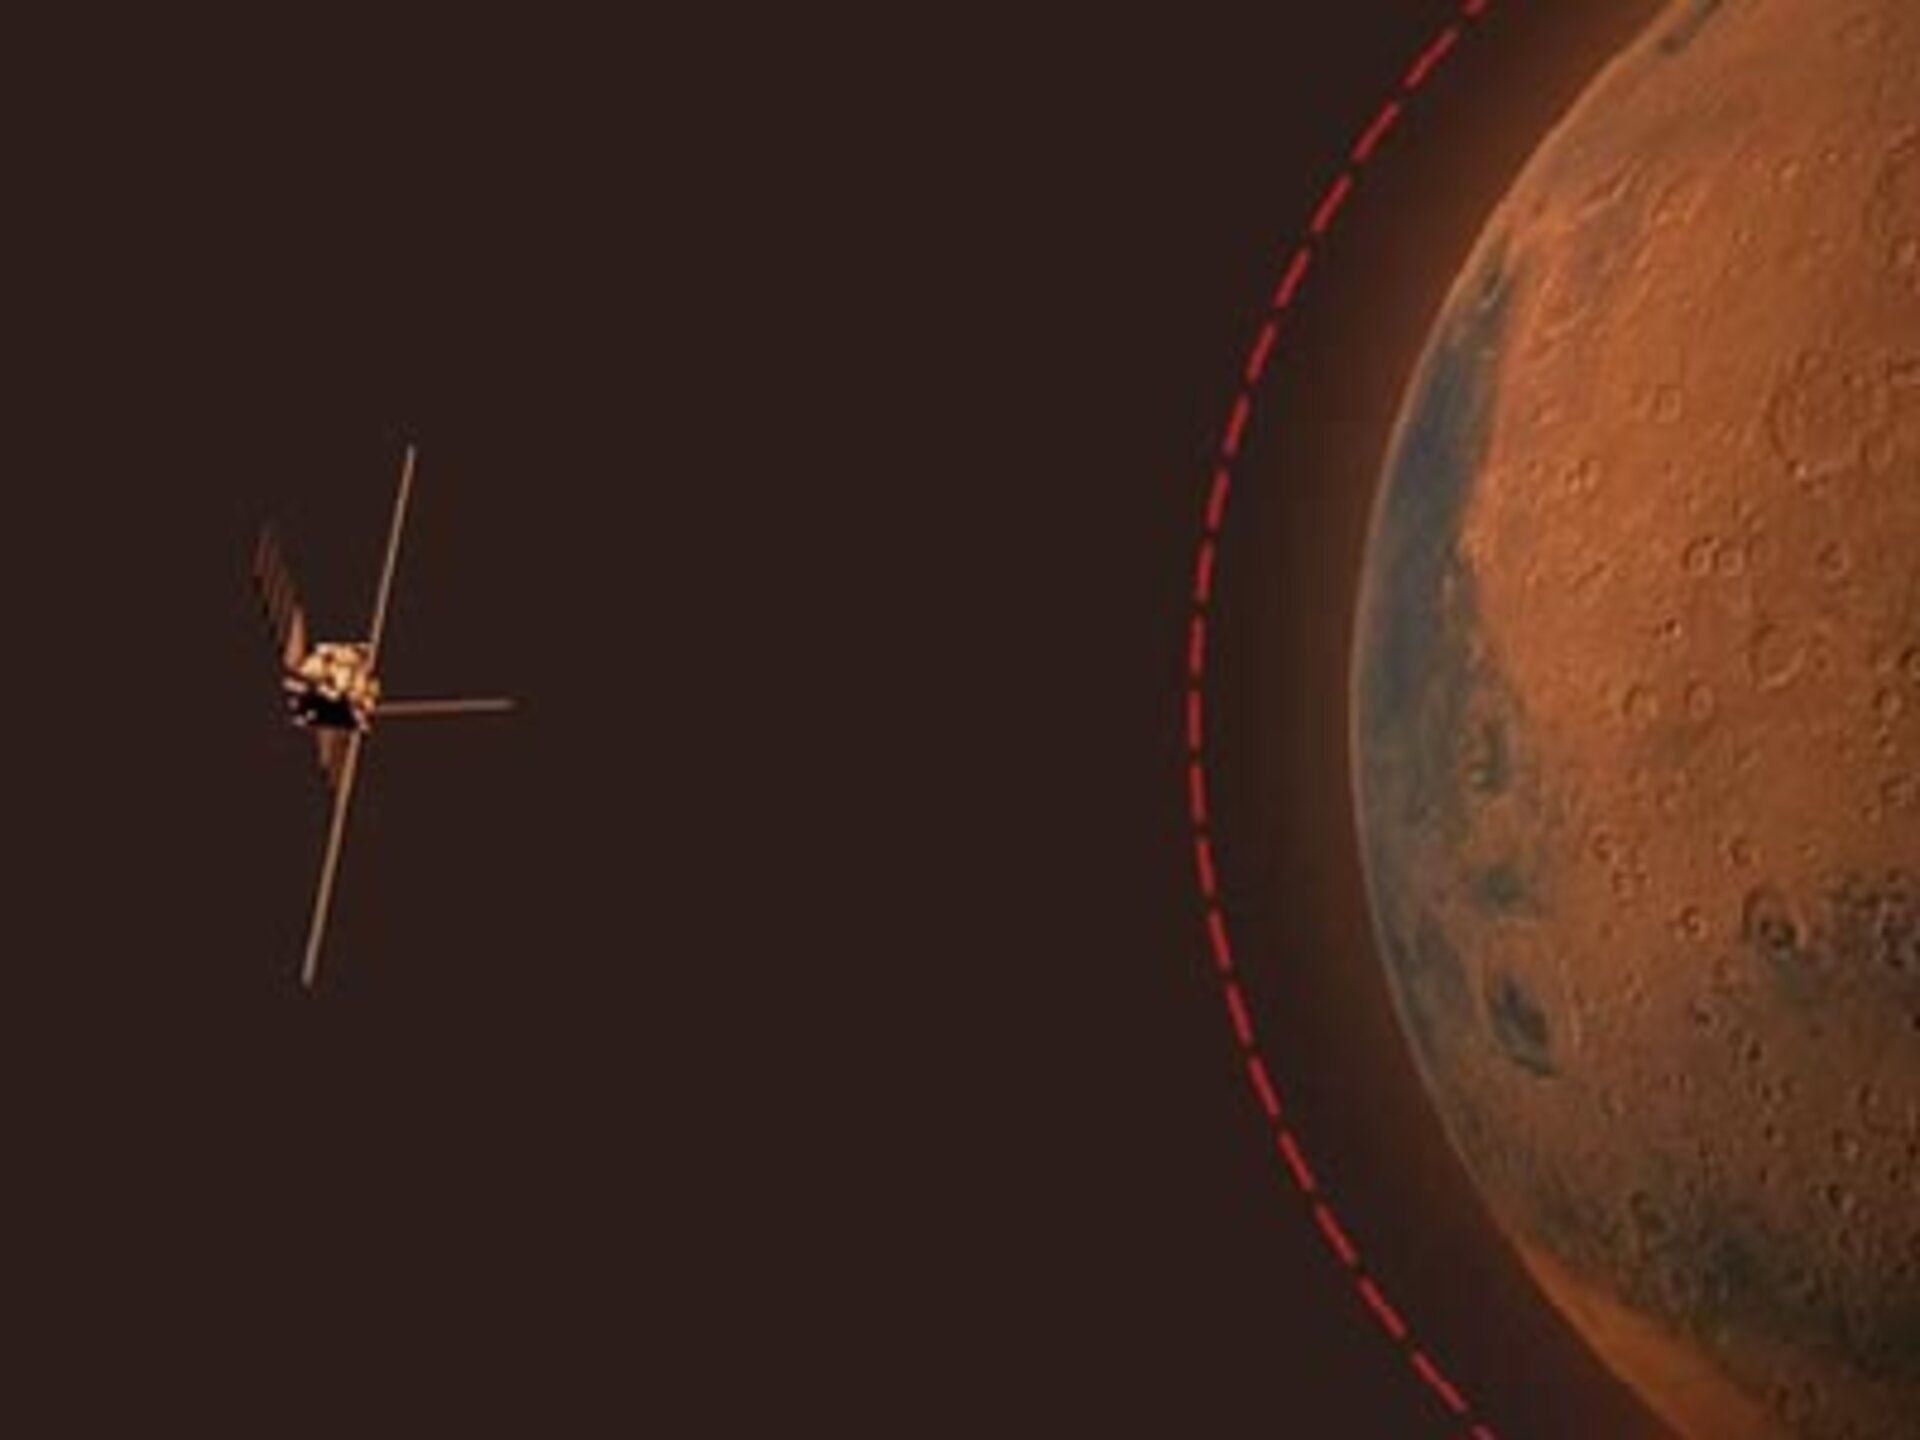 MARSIS kan structuren en lagen ónder het oppervlak van Mars bloot leggen